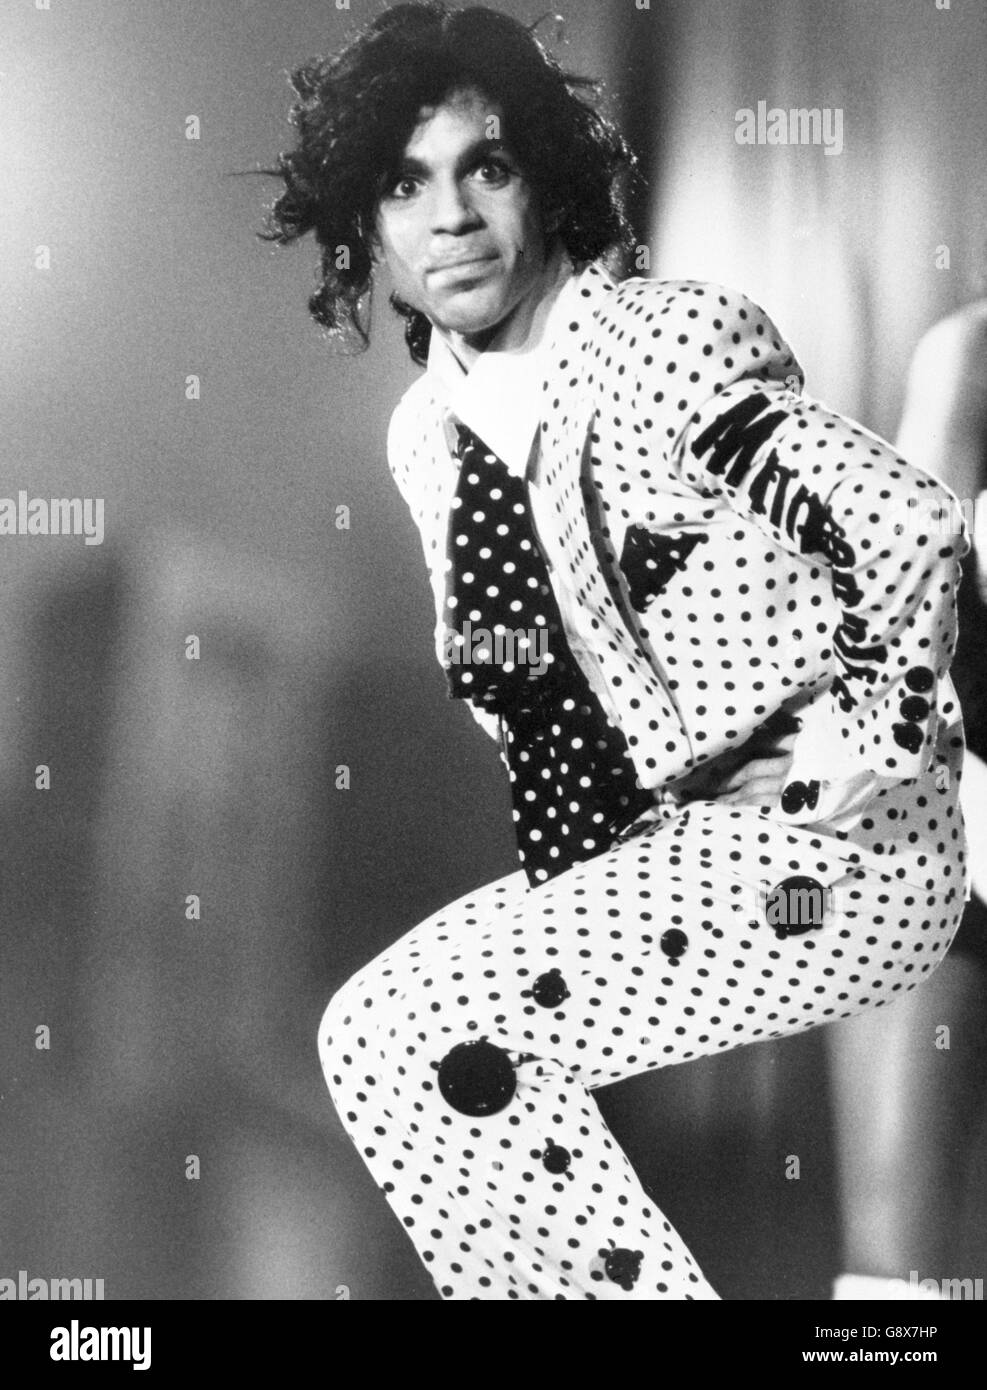 La star pop Prince durante il suo tour dei concerti Lovesexy. Foto Stock